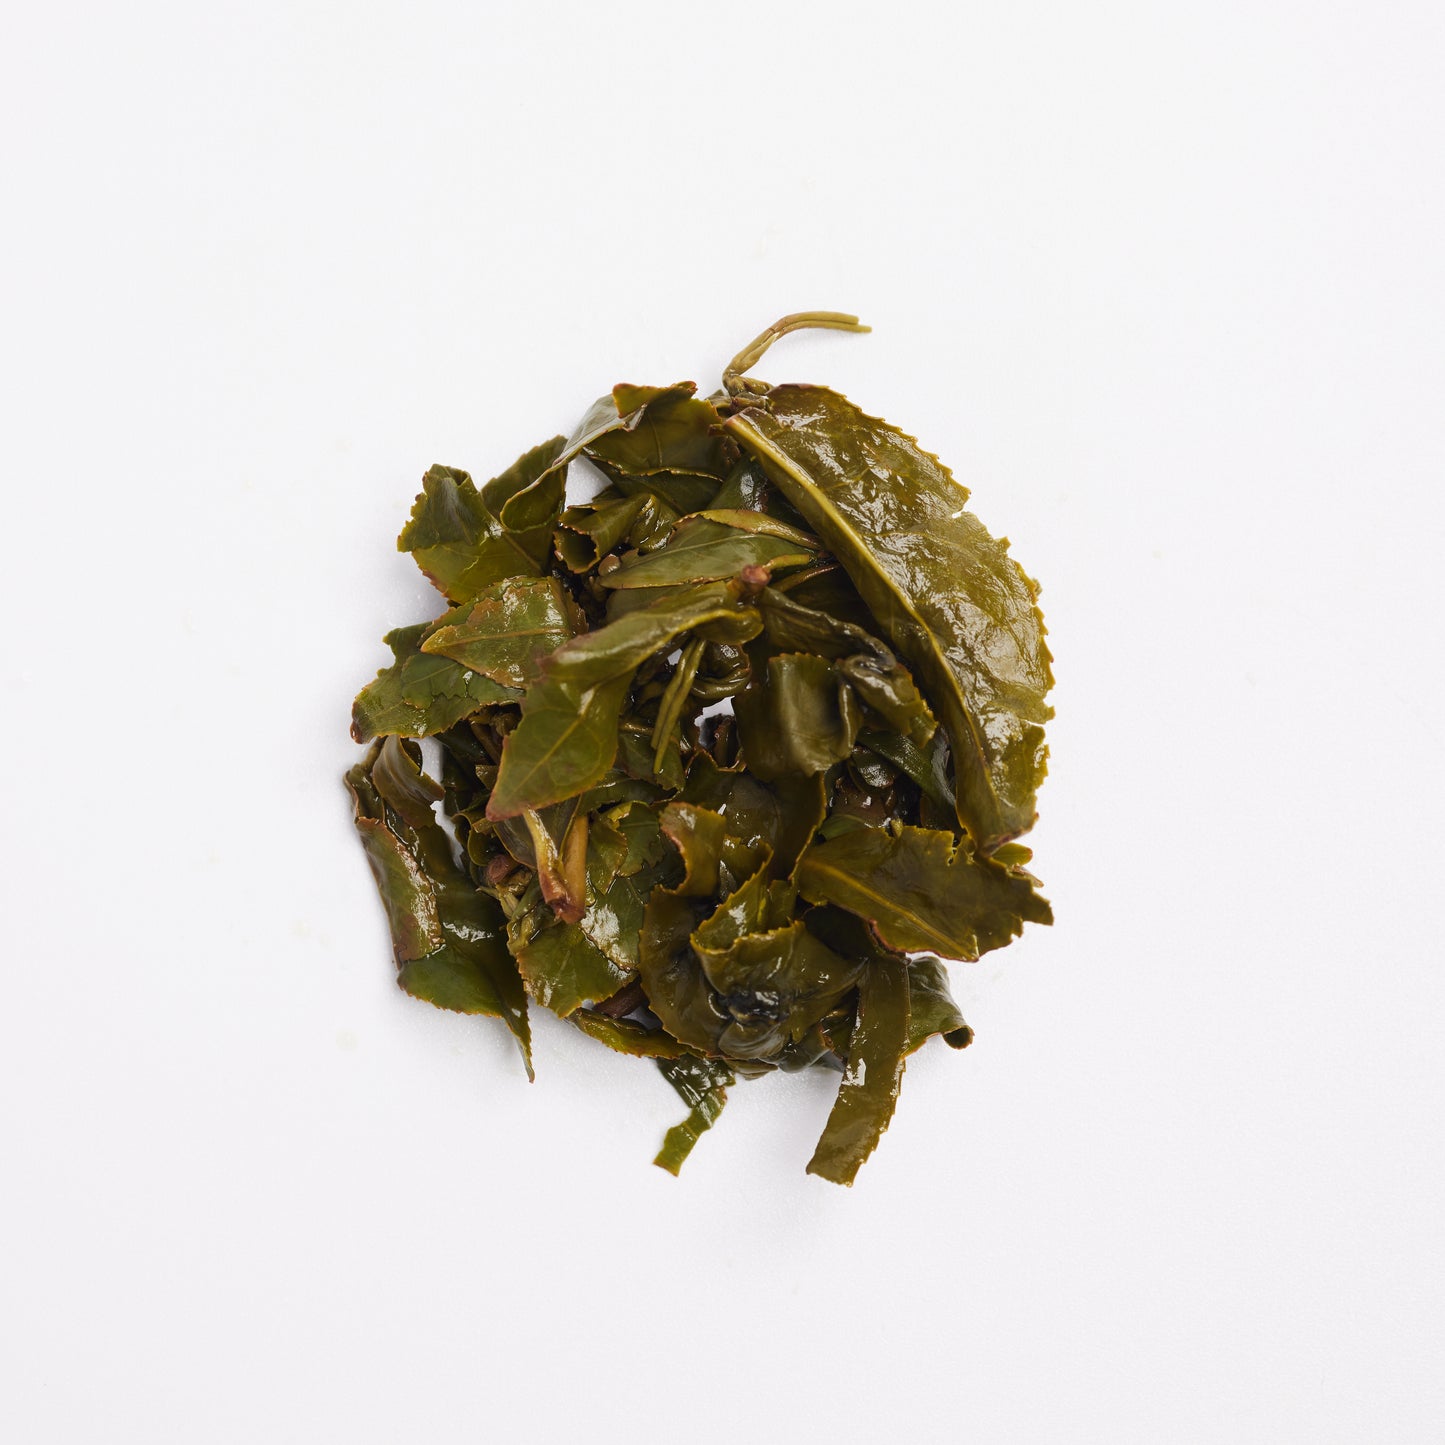 Da Yu Ling (High Mountain Oolong Tea)